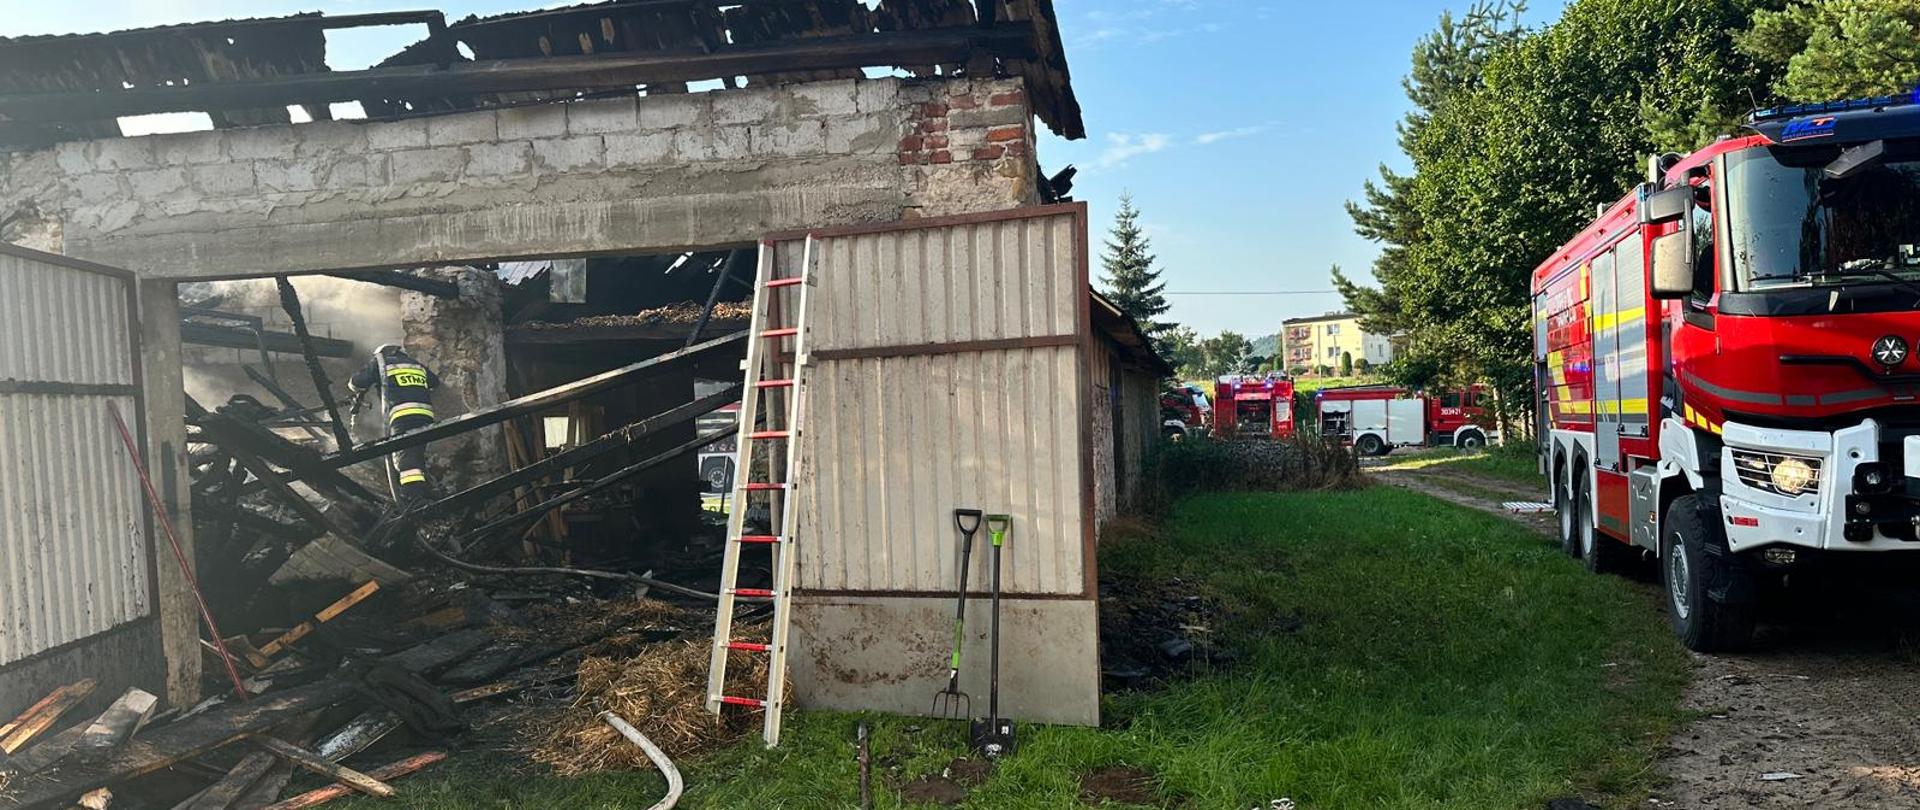 Zdjęcie przedstawia: po lewej stronie budynek gdzie wybuchł pożar. Wewnątrz, przez otwarte wrota widać ratownika podczas kontroli pogorzeliska. Po prawej stronie widać stojące wozy strażackie.